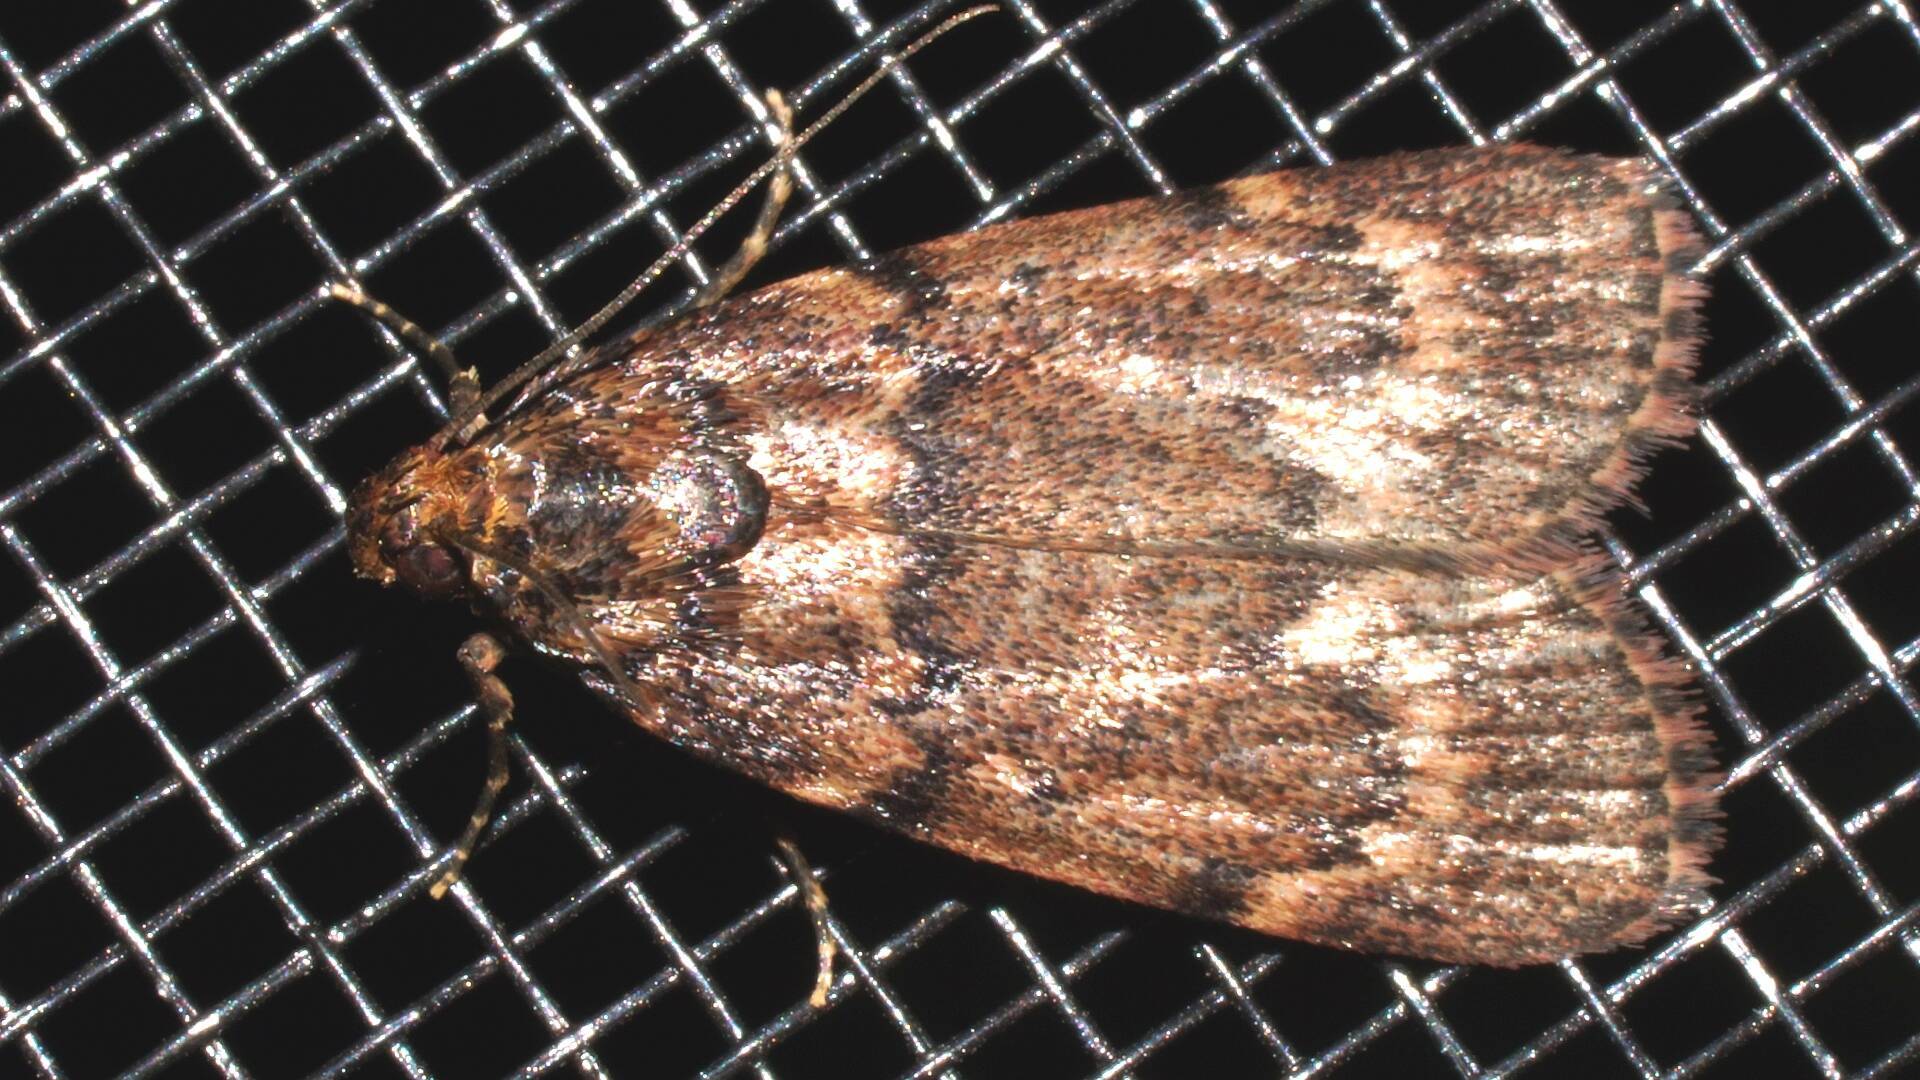 One-eyed Moth (Mimaglossa nauplialis)